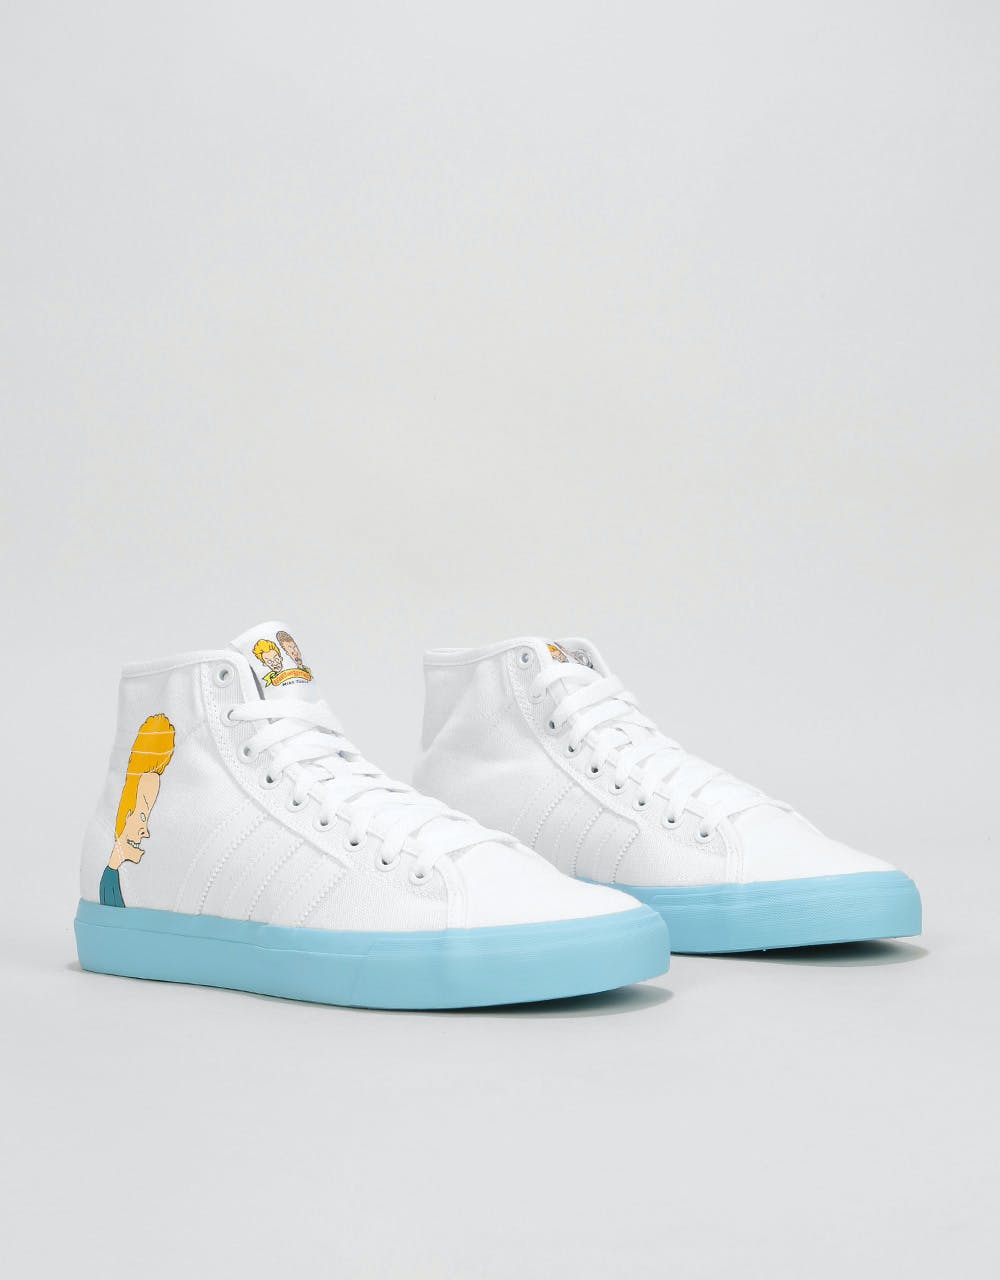 Adidas x Beavis & Butt-Head Matchcourt High RX Skate Shoes - White